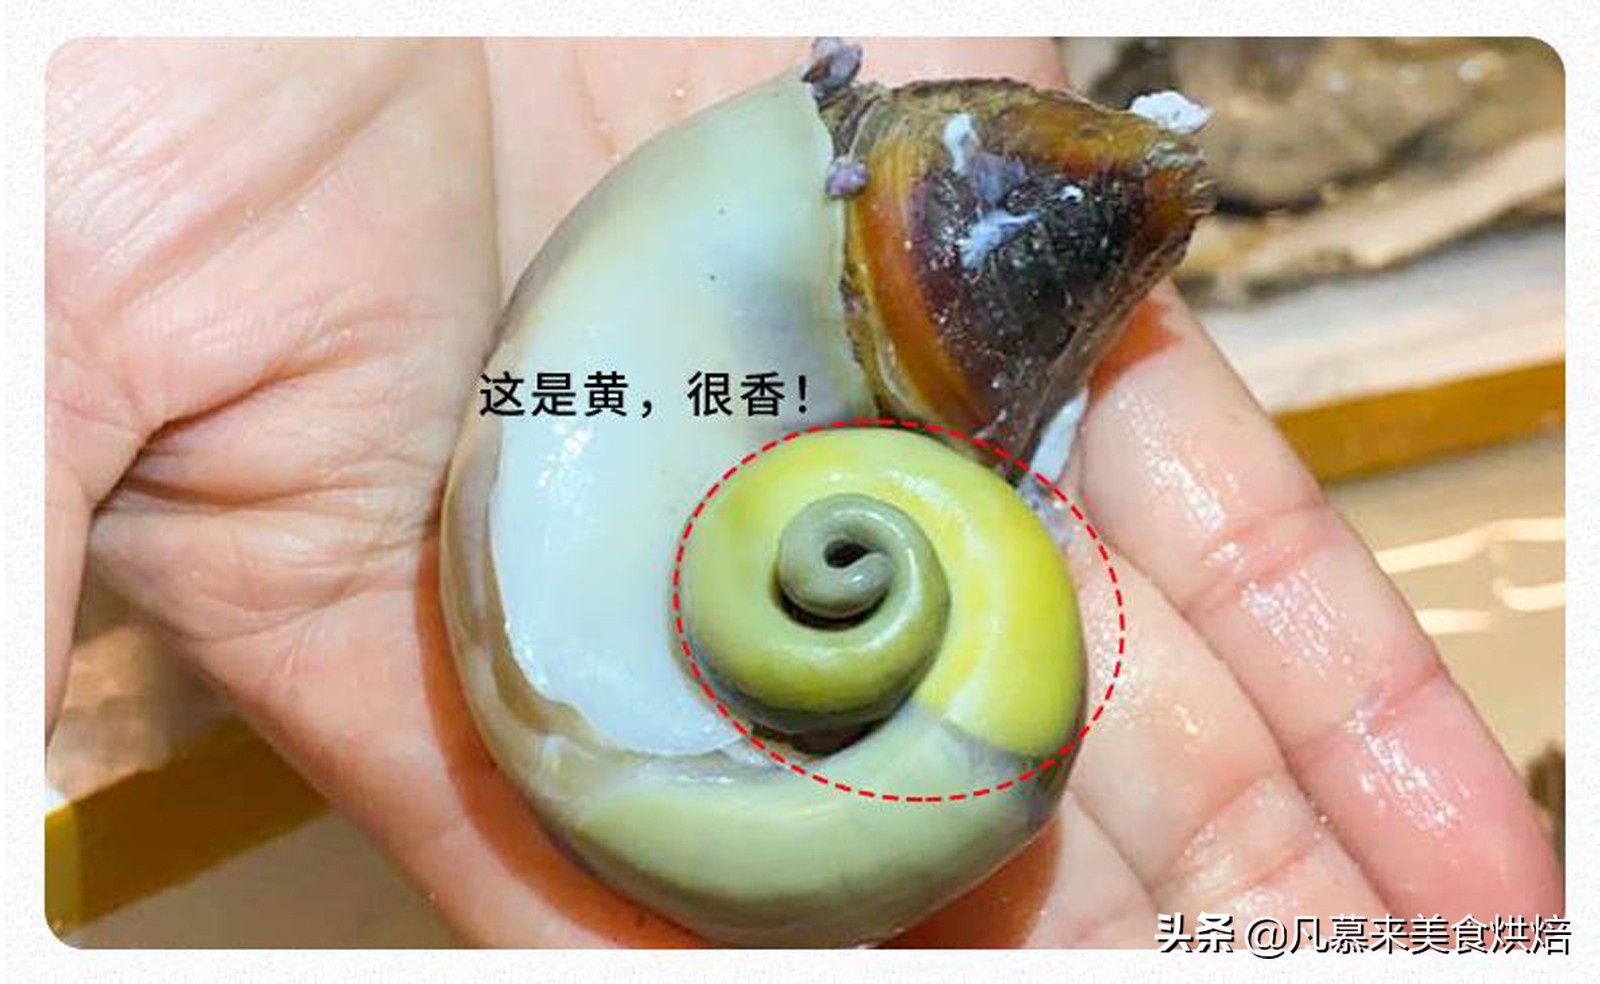 大海螺的正确吃法、大海螺鉴别鲜活的方法、大海螺的四种做法